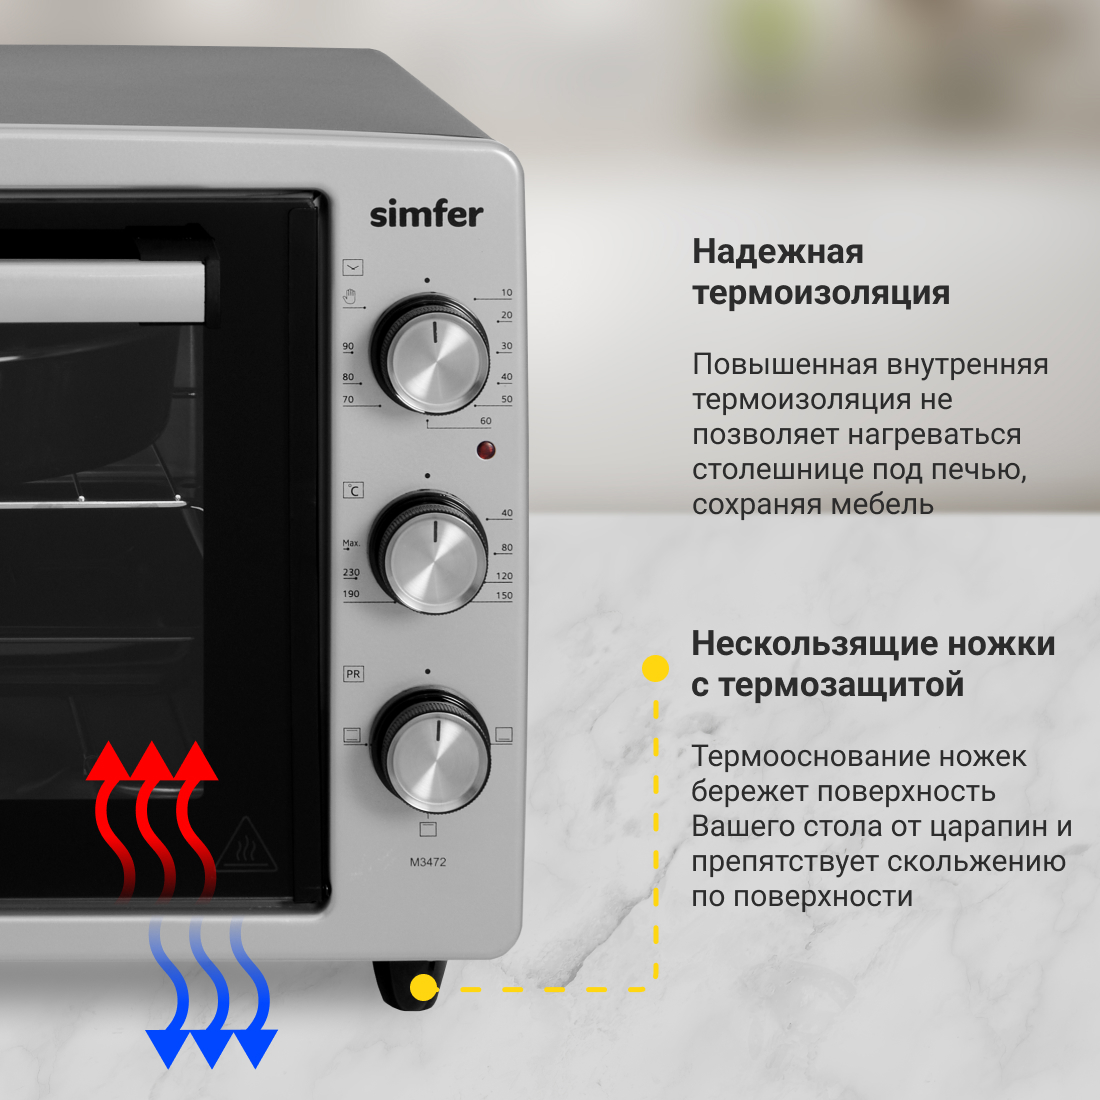 Мини-печь Simfer M3472 (3 режима, цвет серый) Мини-печь Simfer M3472 (3 режима, цвет серый) - фото 6